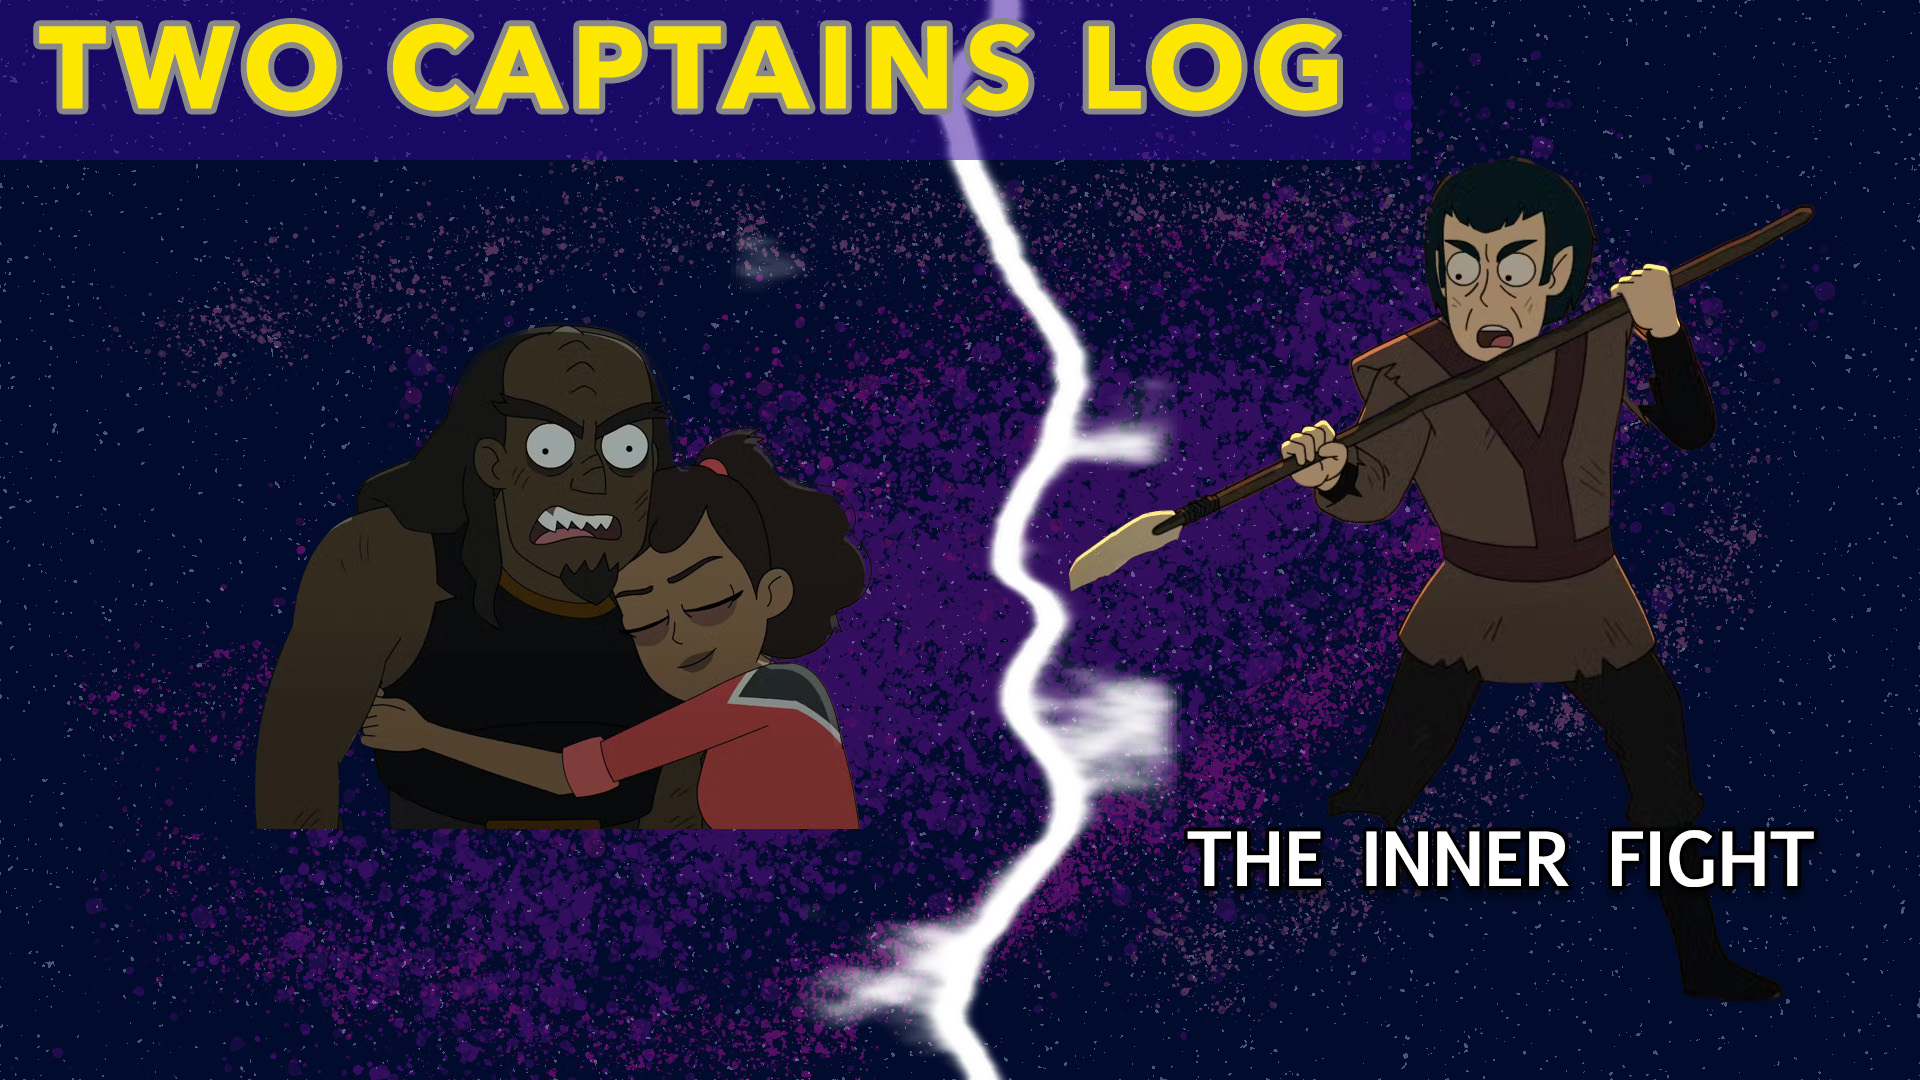 Two Captains Log: “Star Trek: Lower Decks” S4E9 “The Inner Fight” Review